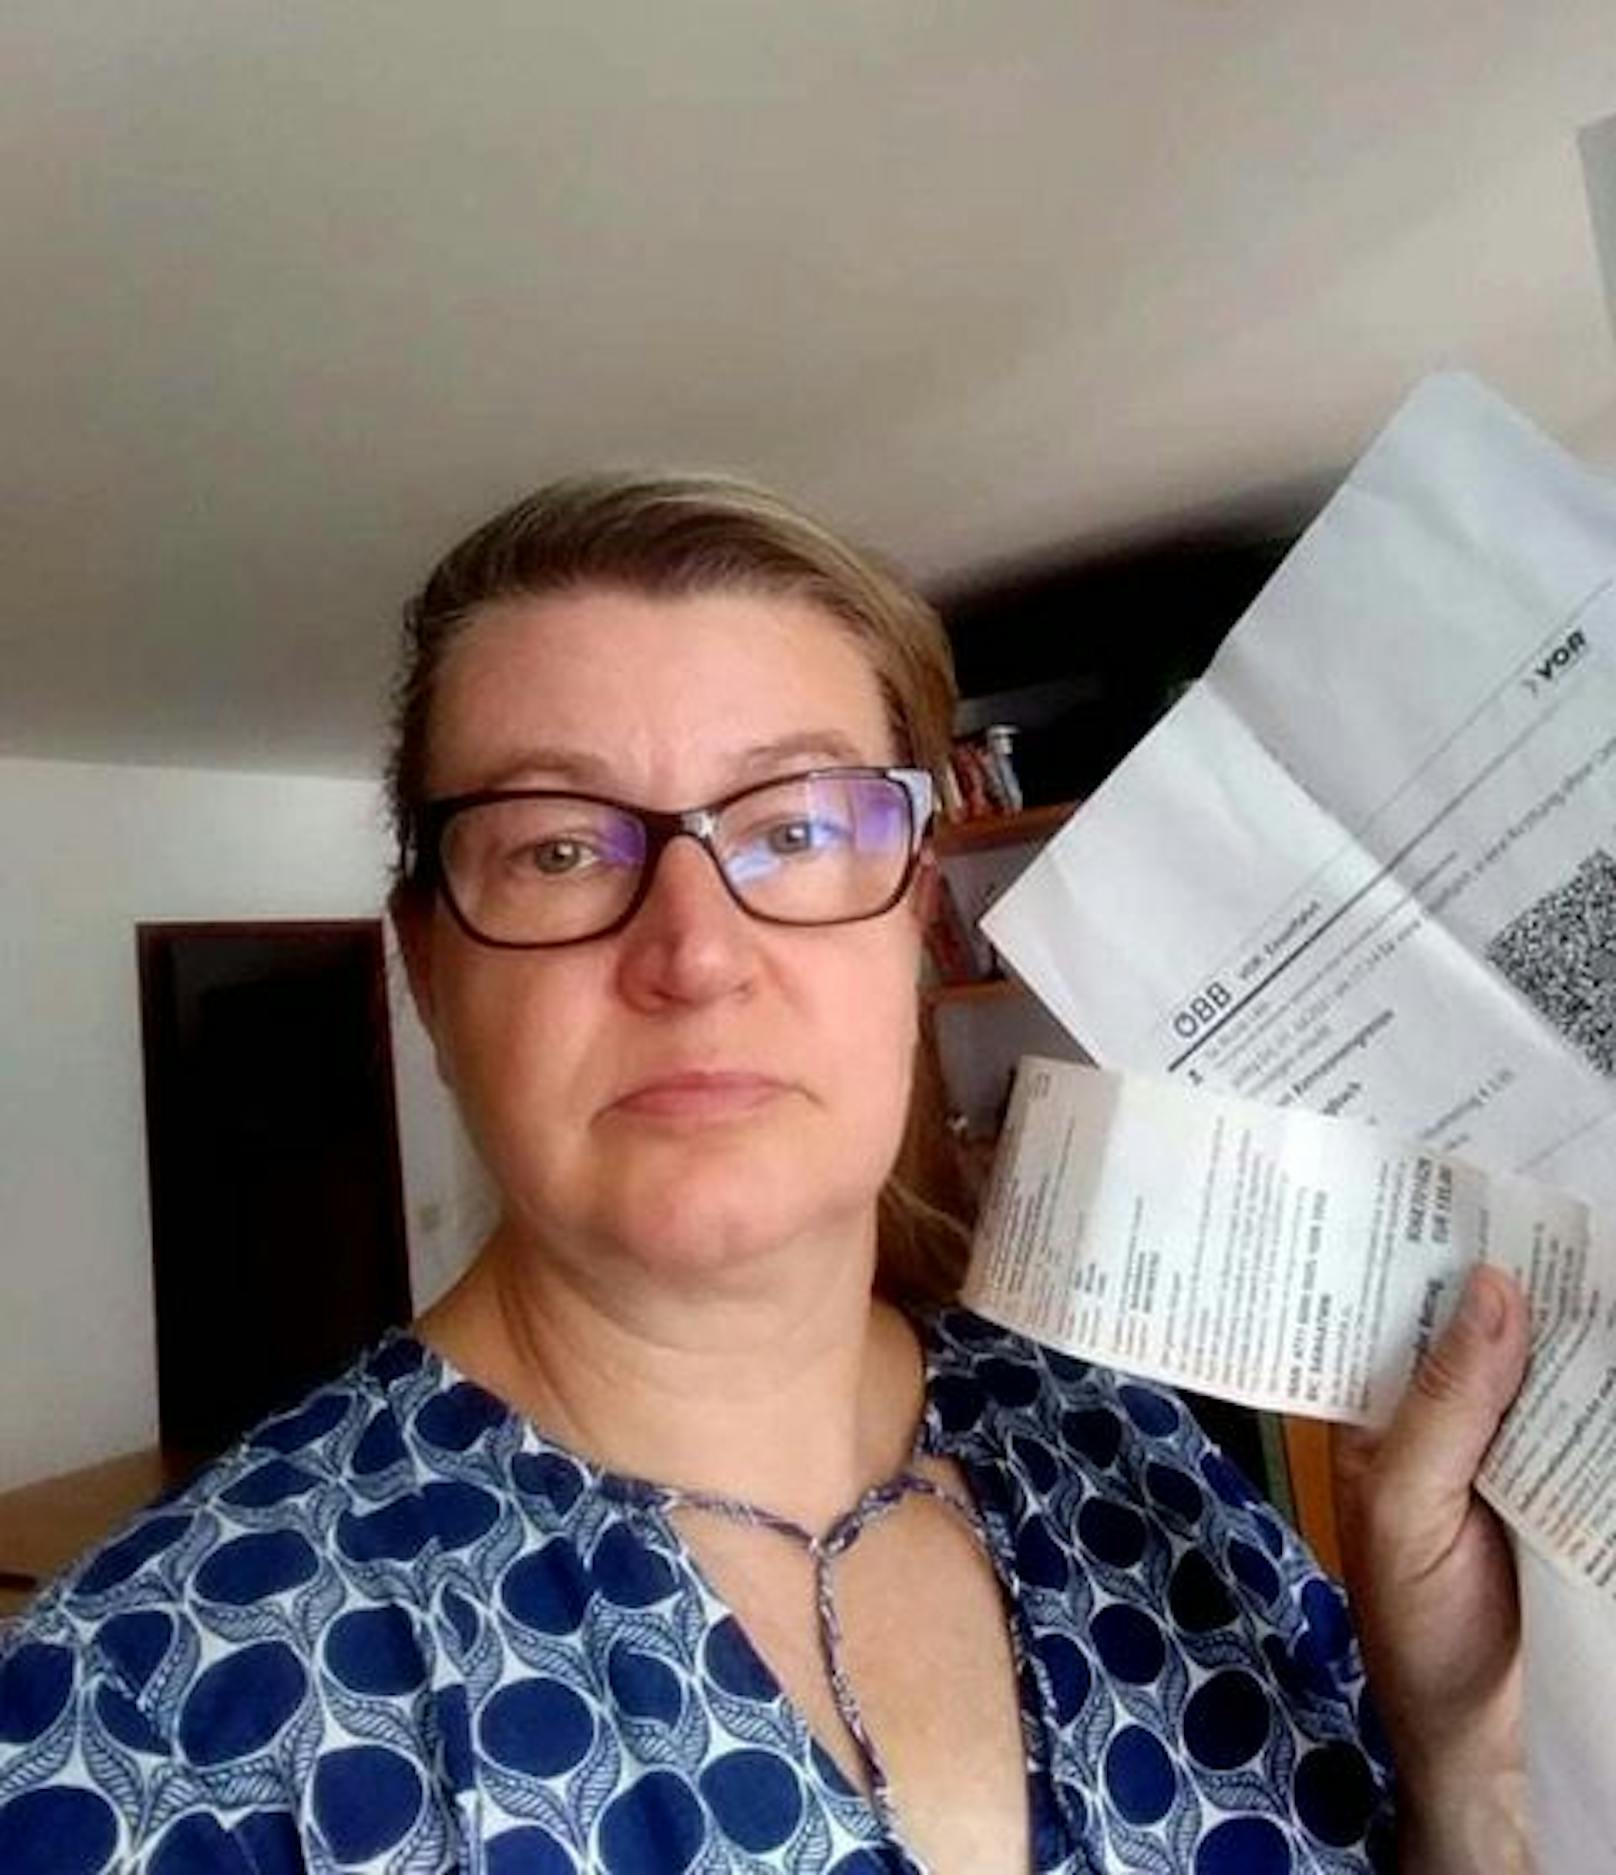 Frau bekam 135 Euro Strafe, weil sie Ticket erst nach Stunden nutzte.